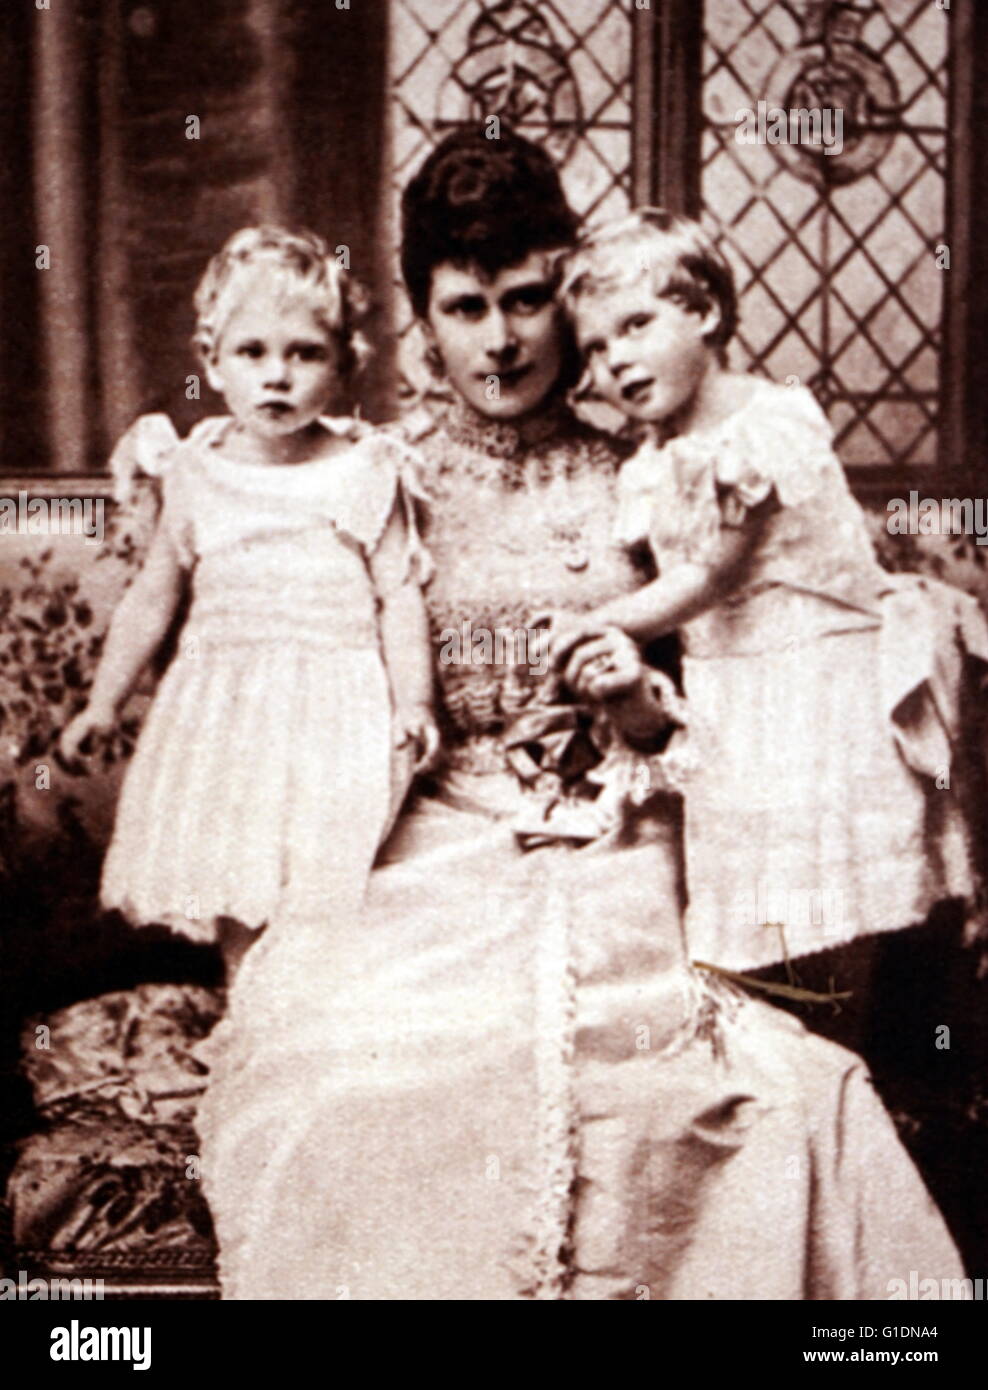 Fotografia della Queen Mary di Teck, la duchessa di York con i suoi figli Prince Albert Frederick Arthur George (1895-1952) e Prince George, Duca di Kent (1902-1942). Datata del XIX secolo Foto Stock